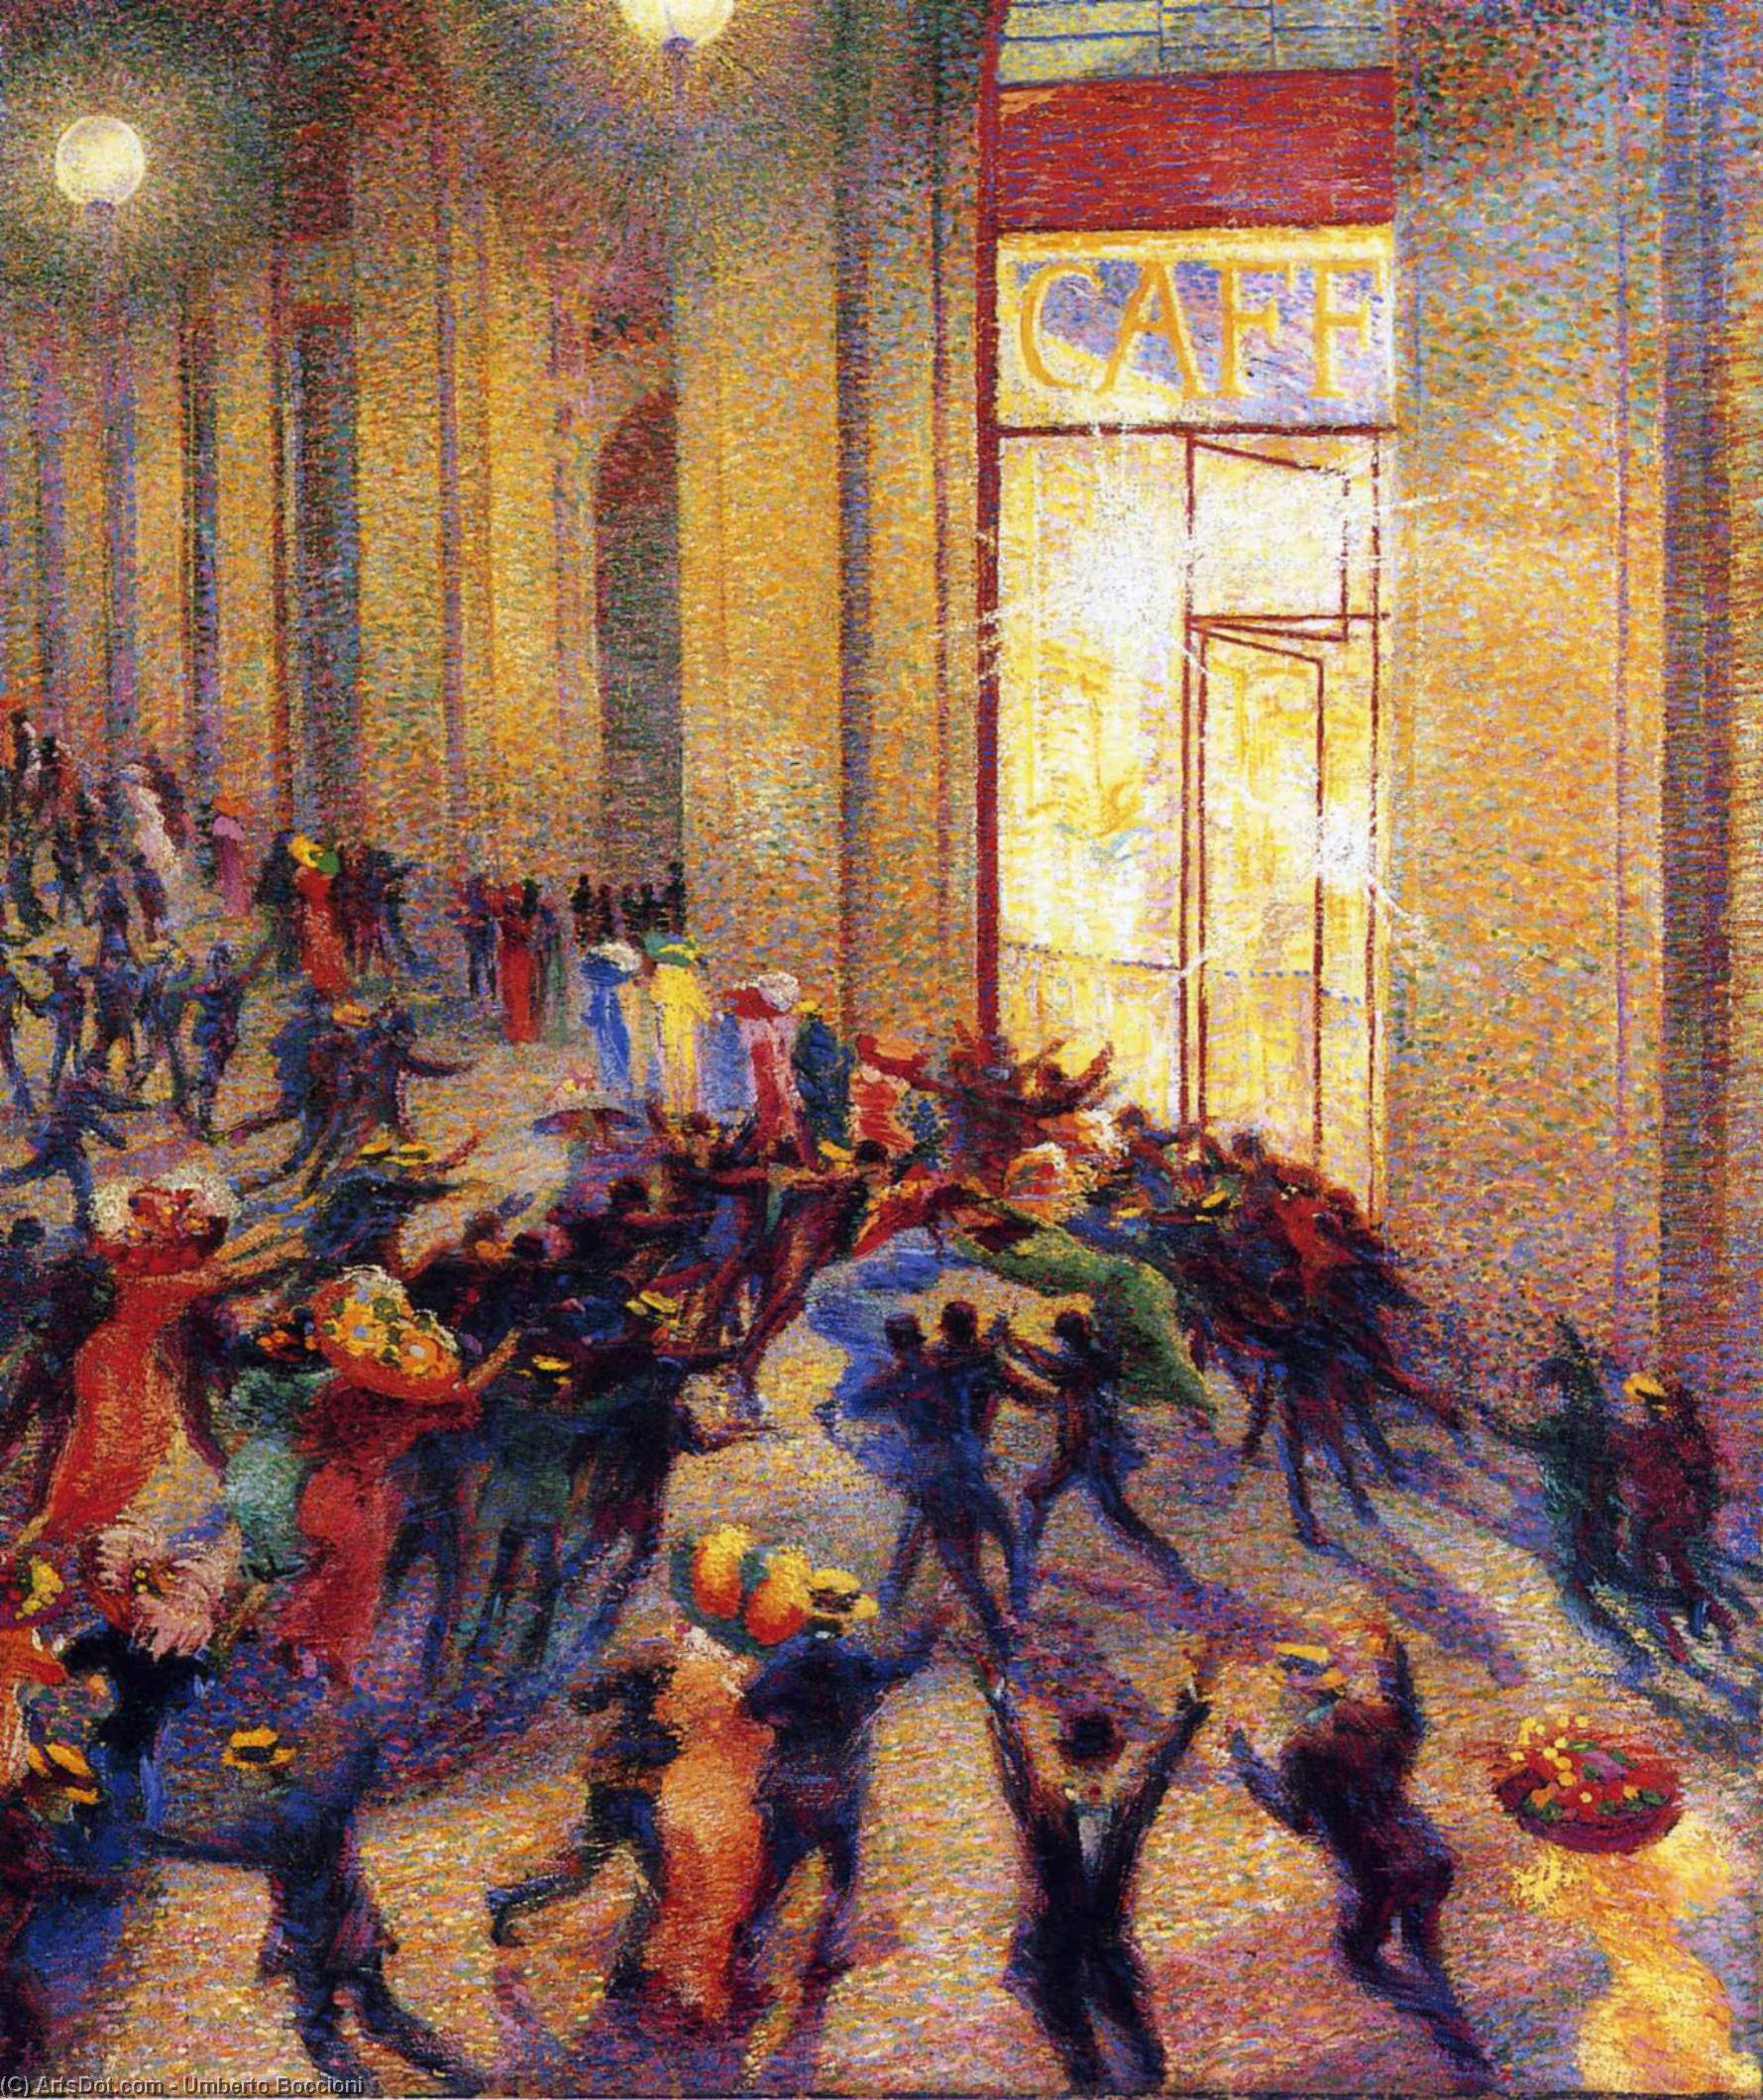 WikiOO.org - Encyclopedia of Fine Arts - Maleri, Artwork Umberto Boccioni - Riot in the Galleria